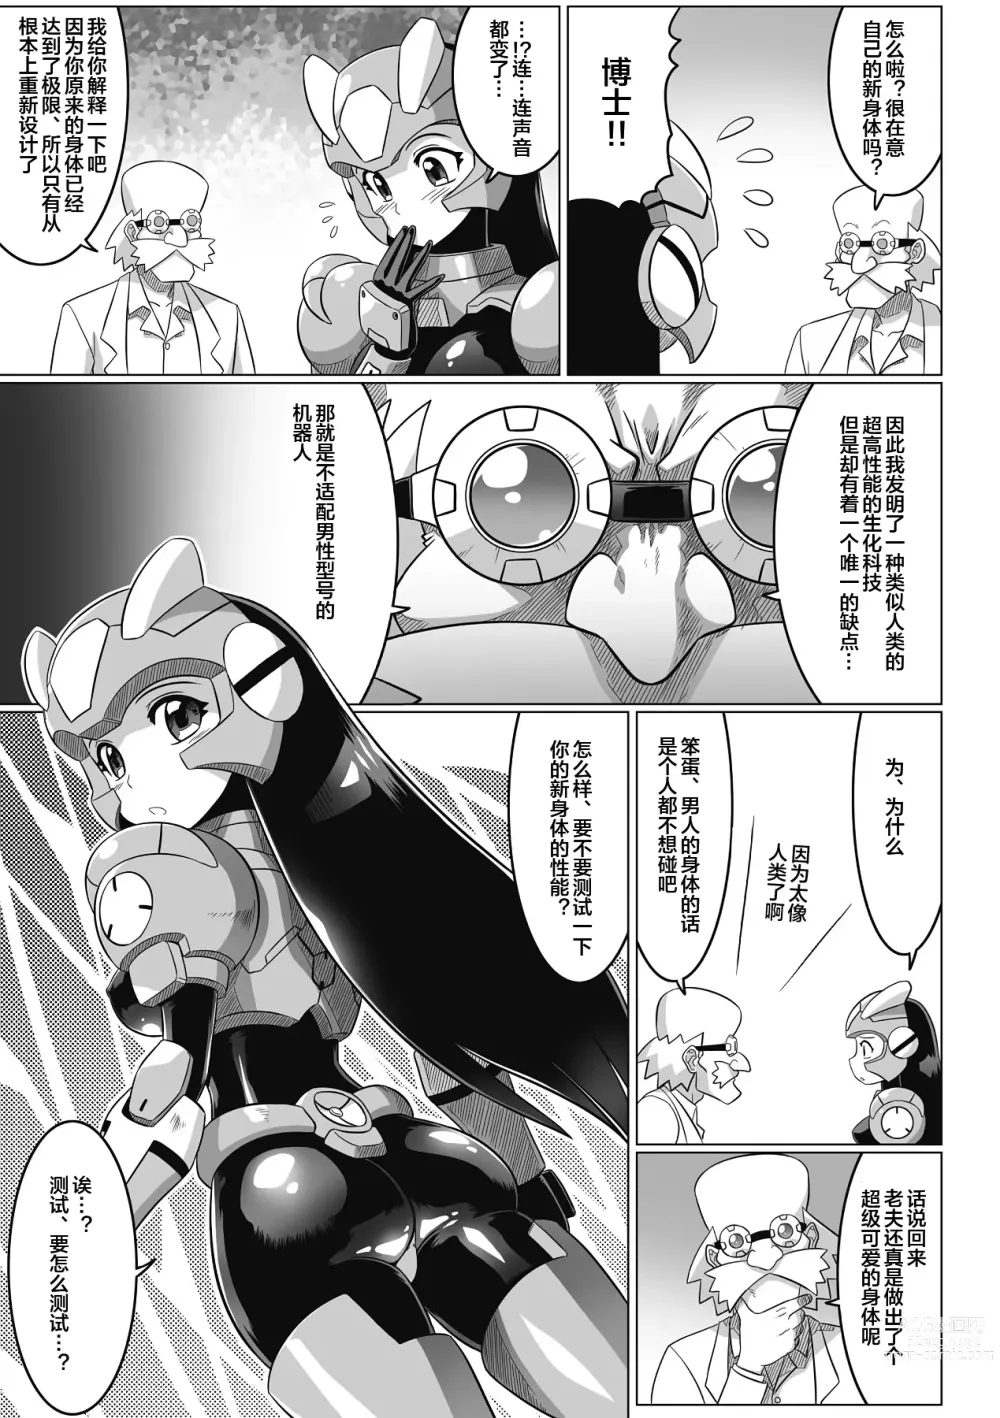 Page 5 of manga Souda, Daikaizou ja!!